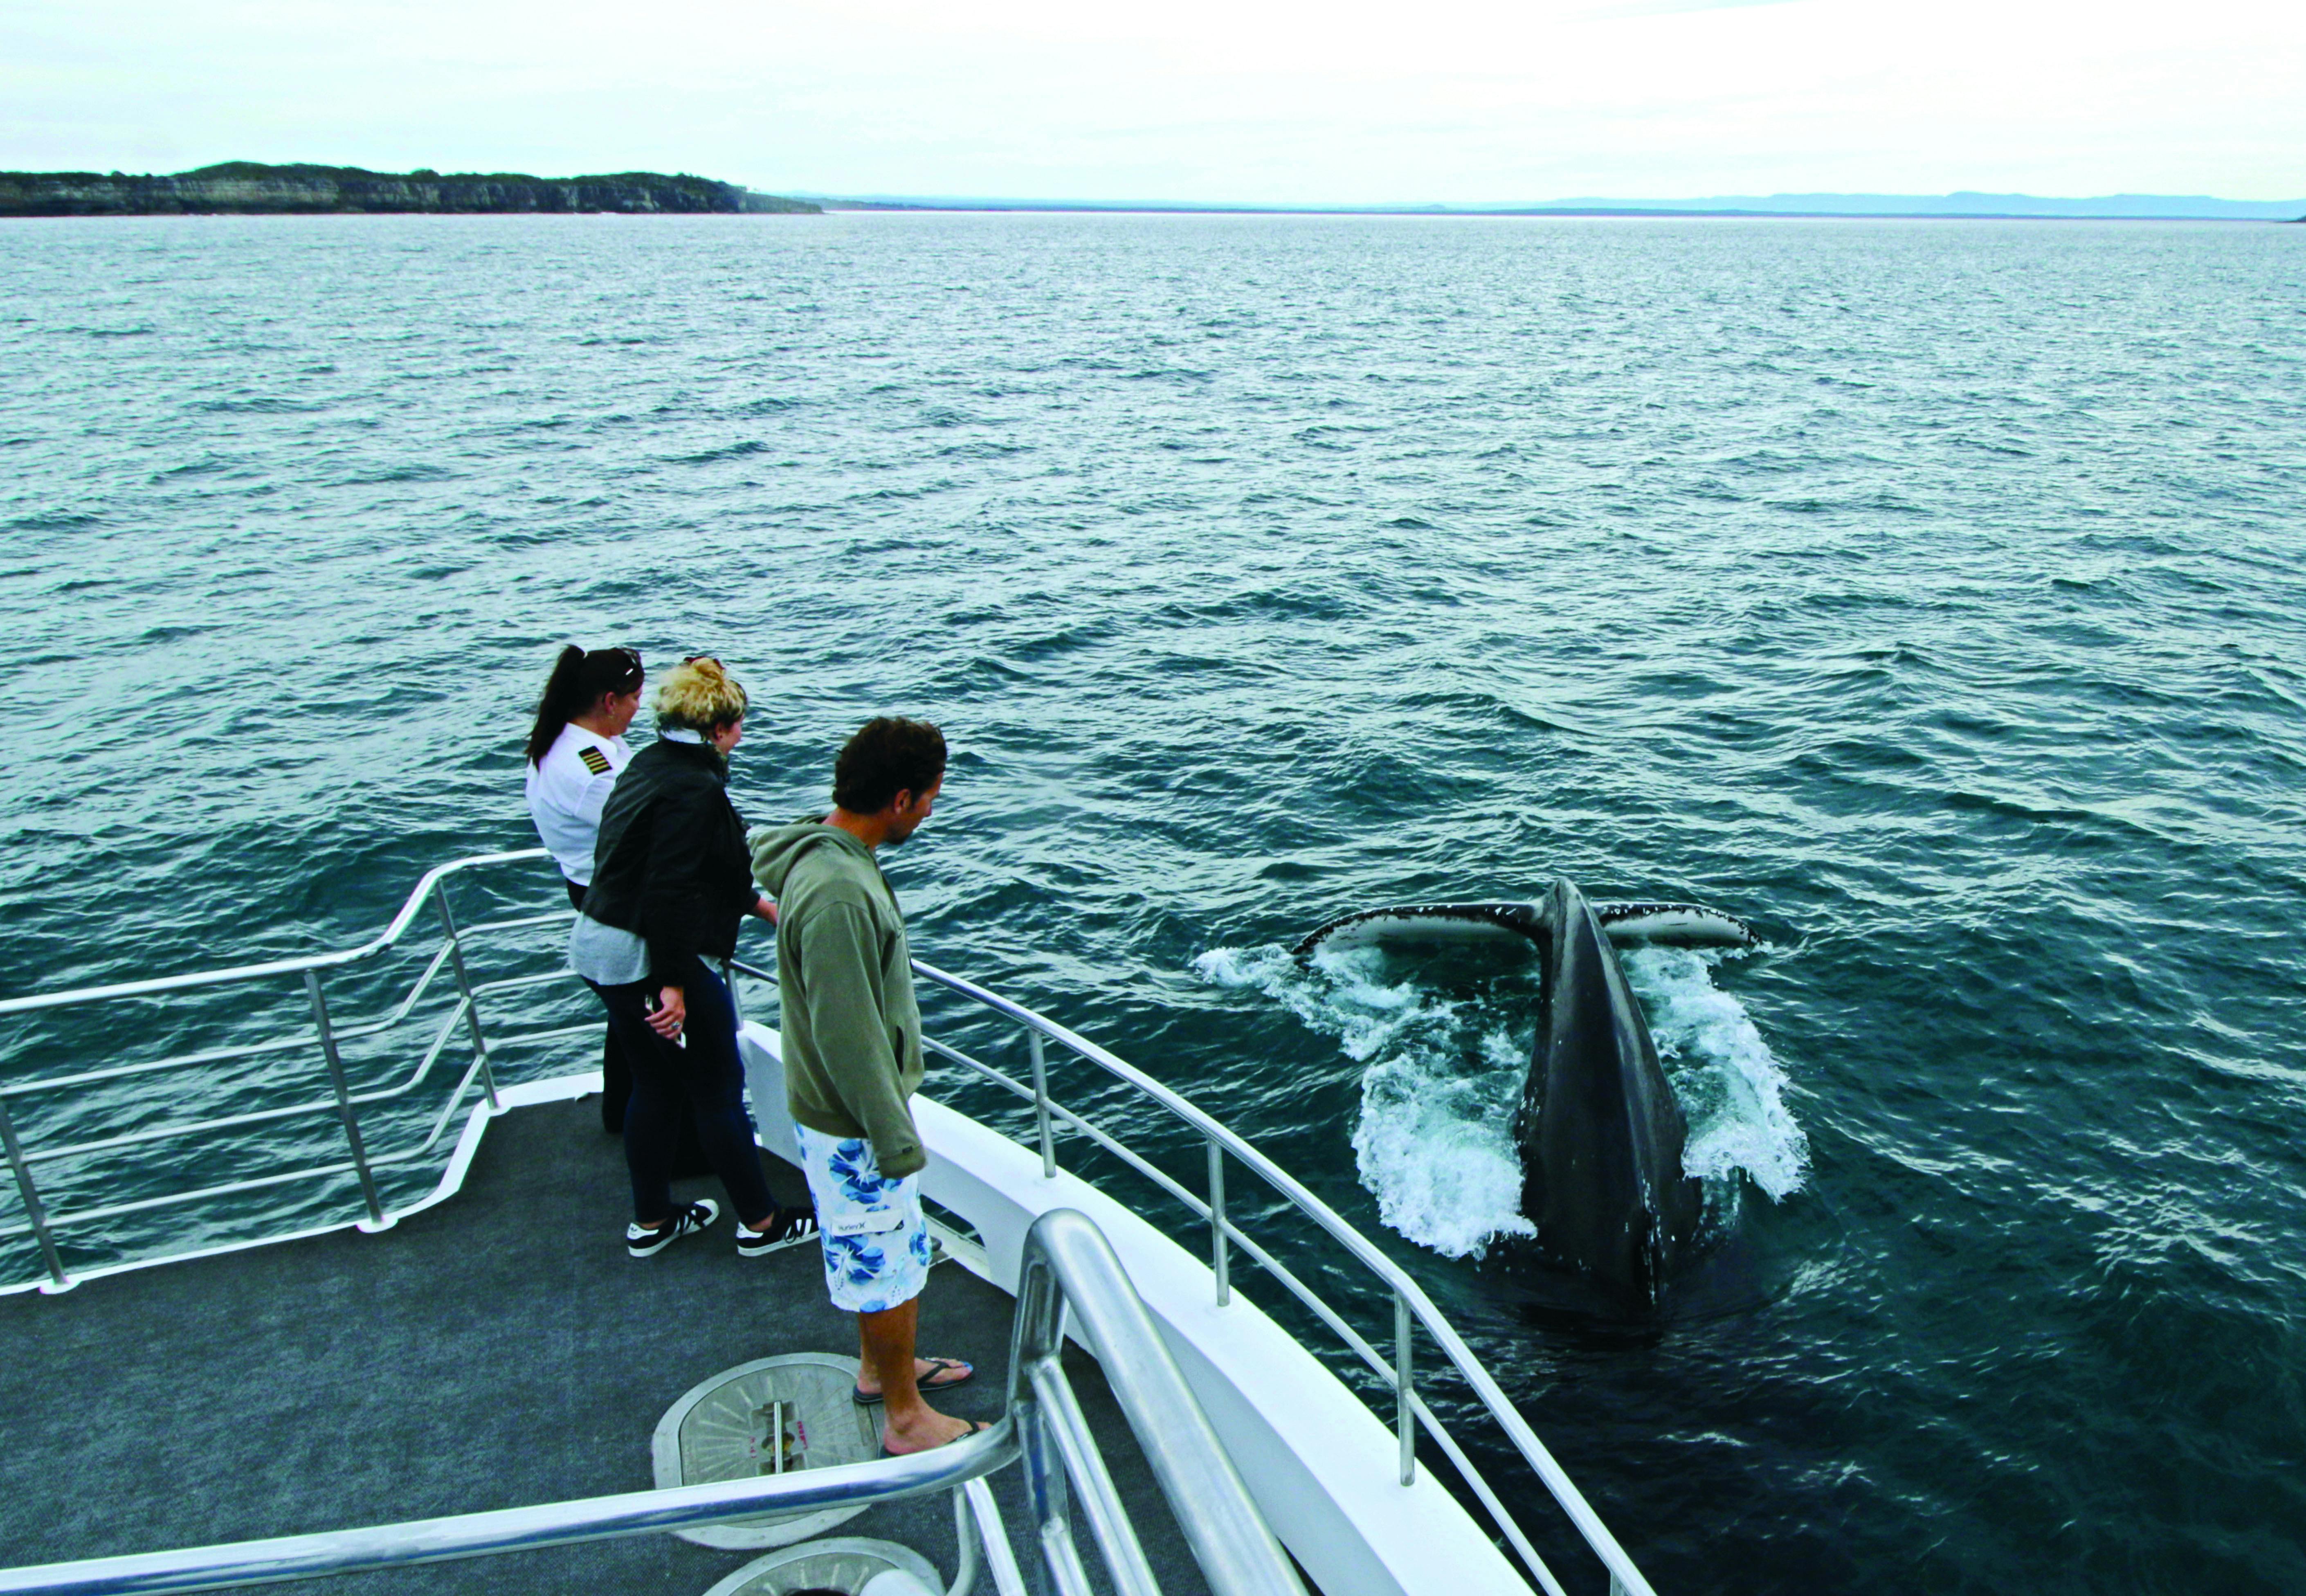 Rejs z obserwacją wielorybów